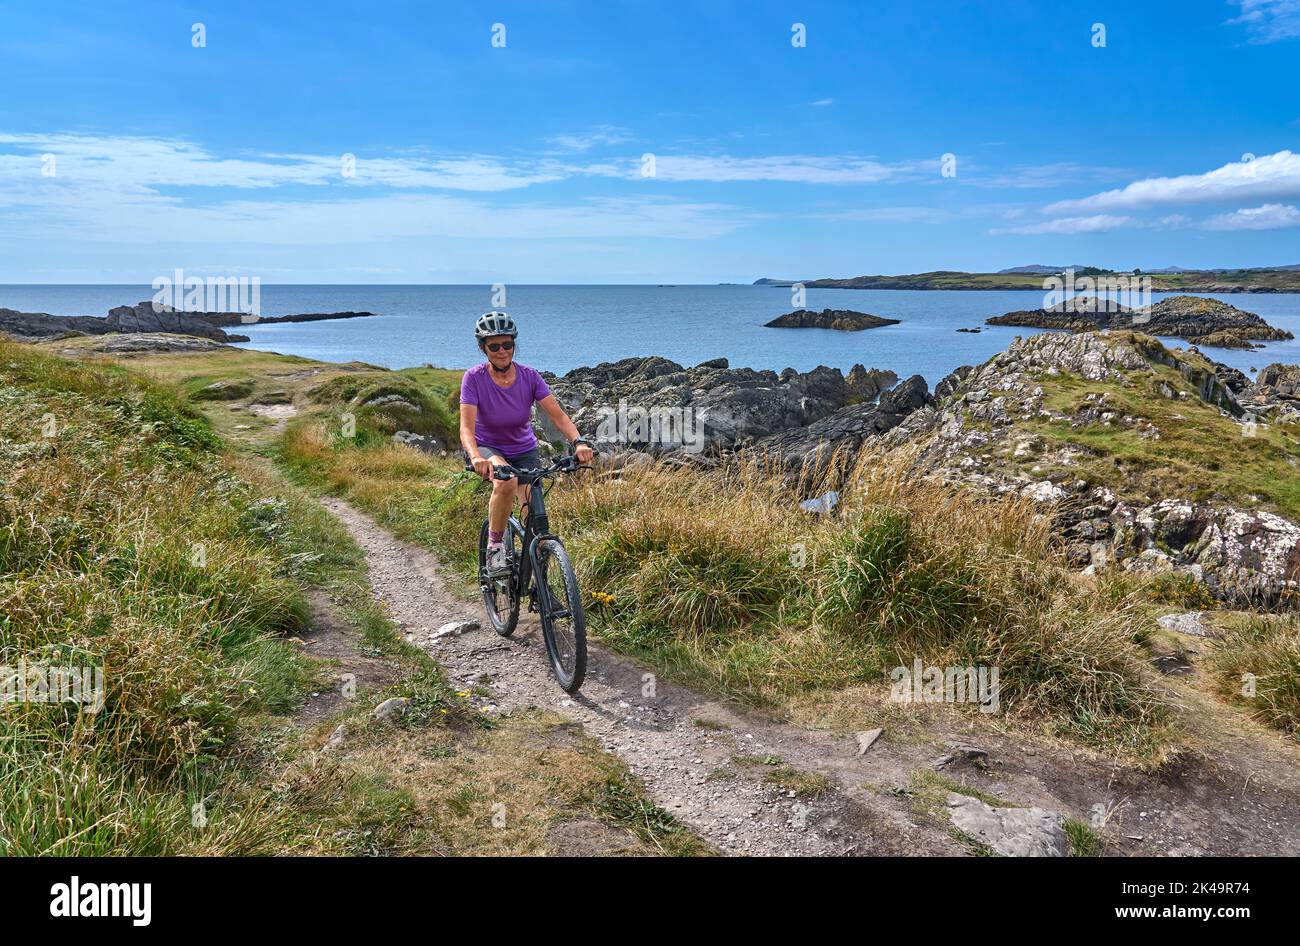 Nette ältere Frau auf dem Mountainbike, mit dem Fahrrad auf den Klippen von Toormore, Grafschaft Cork im Südwesten Irlands Stockfoto